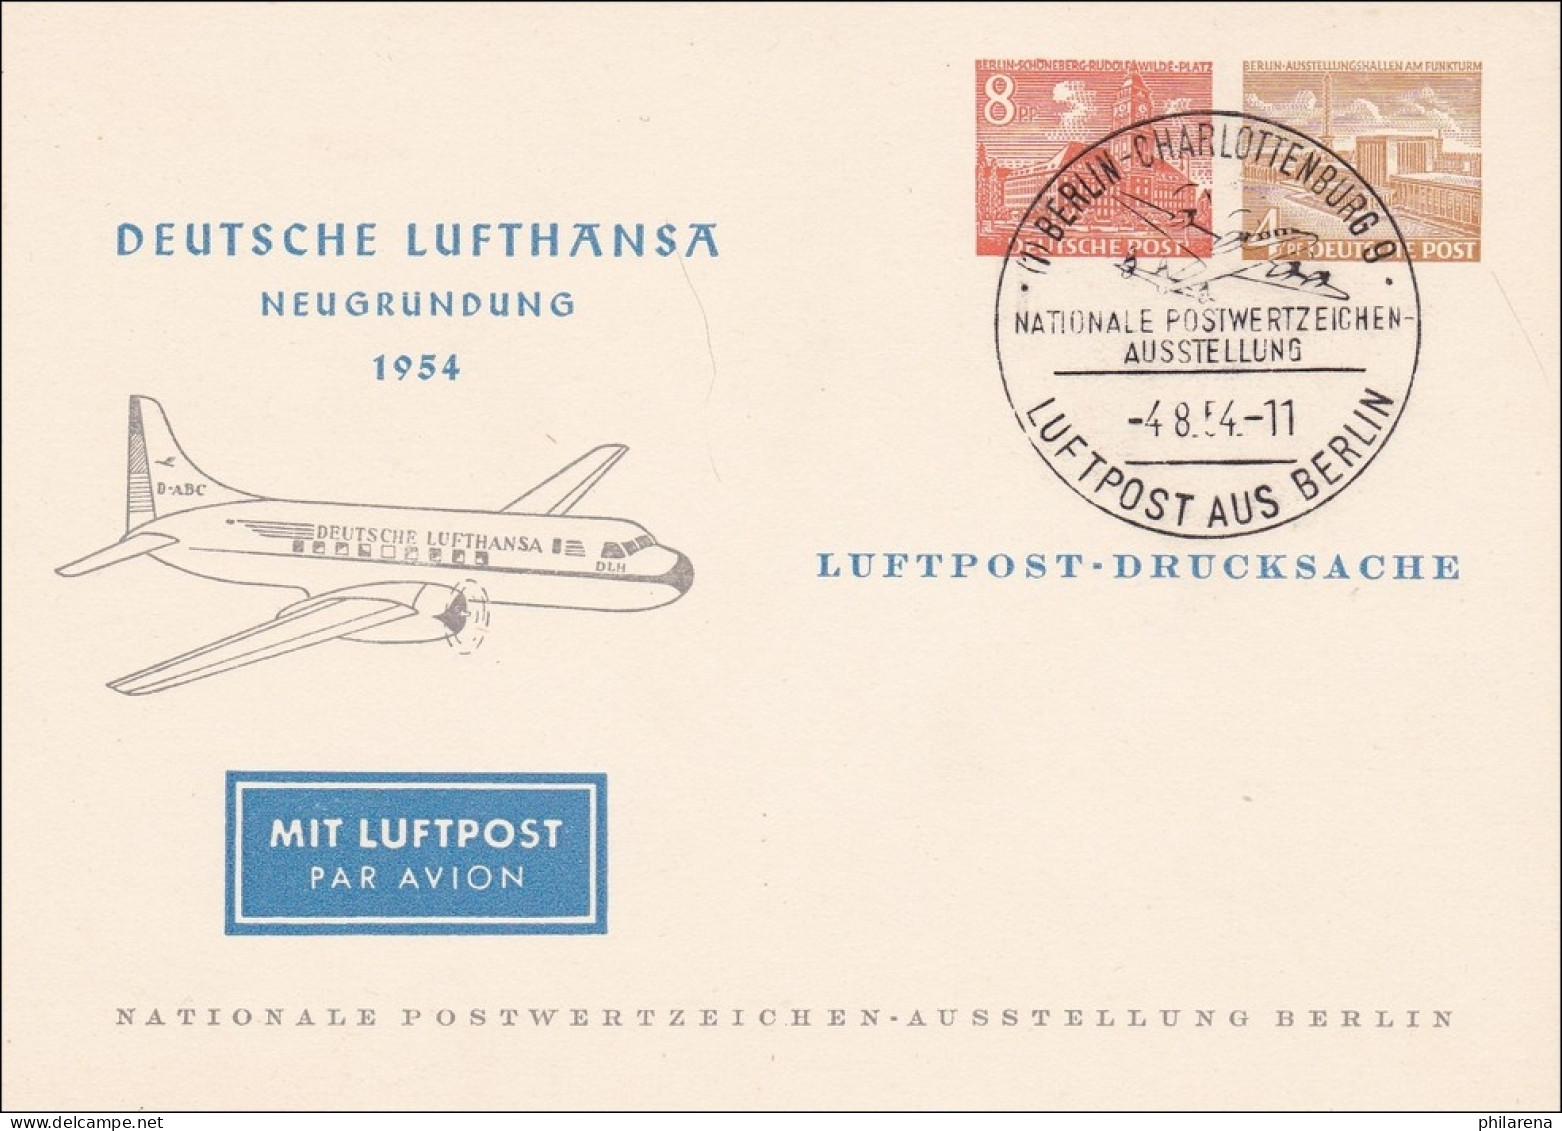 Deutsche Lufthansa 1954 Luftpost Drucksache Briefmarken Ausstellung - Briefe U. Dokumente